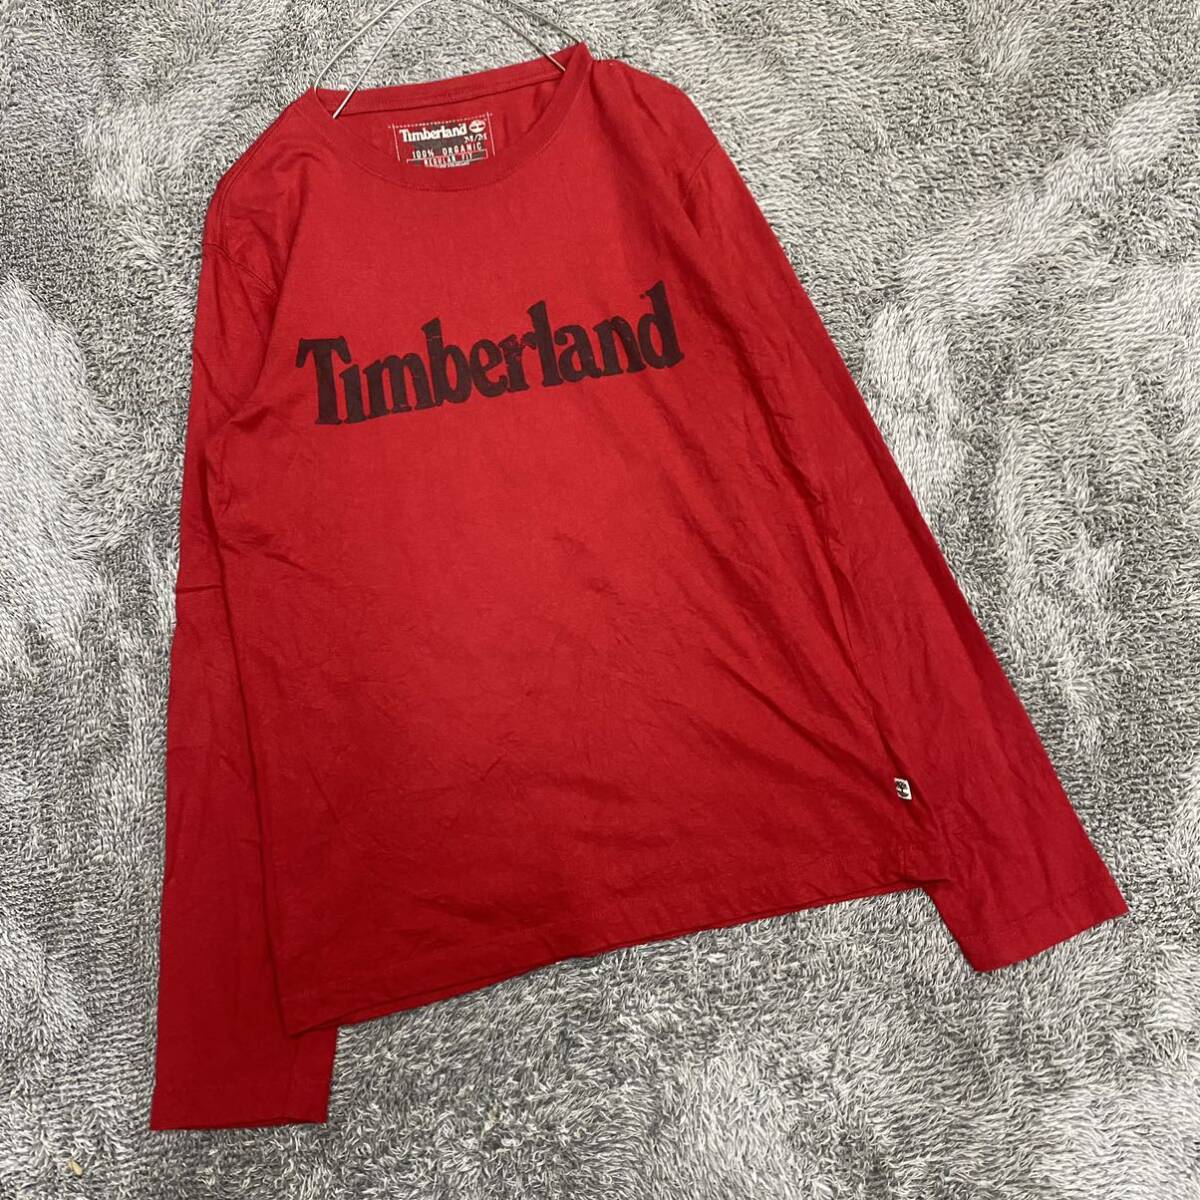 Timberland ティンバーランド 長袖Tシャツ 長袖カットソー ロンT サイズM レッド 赤 メンズ トップス 最落なし （I18）_画像1